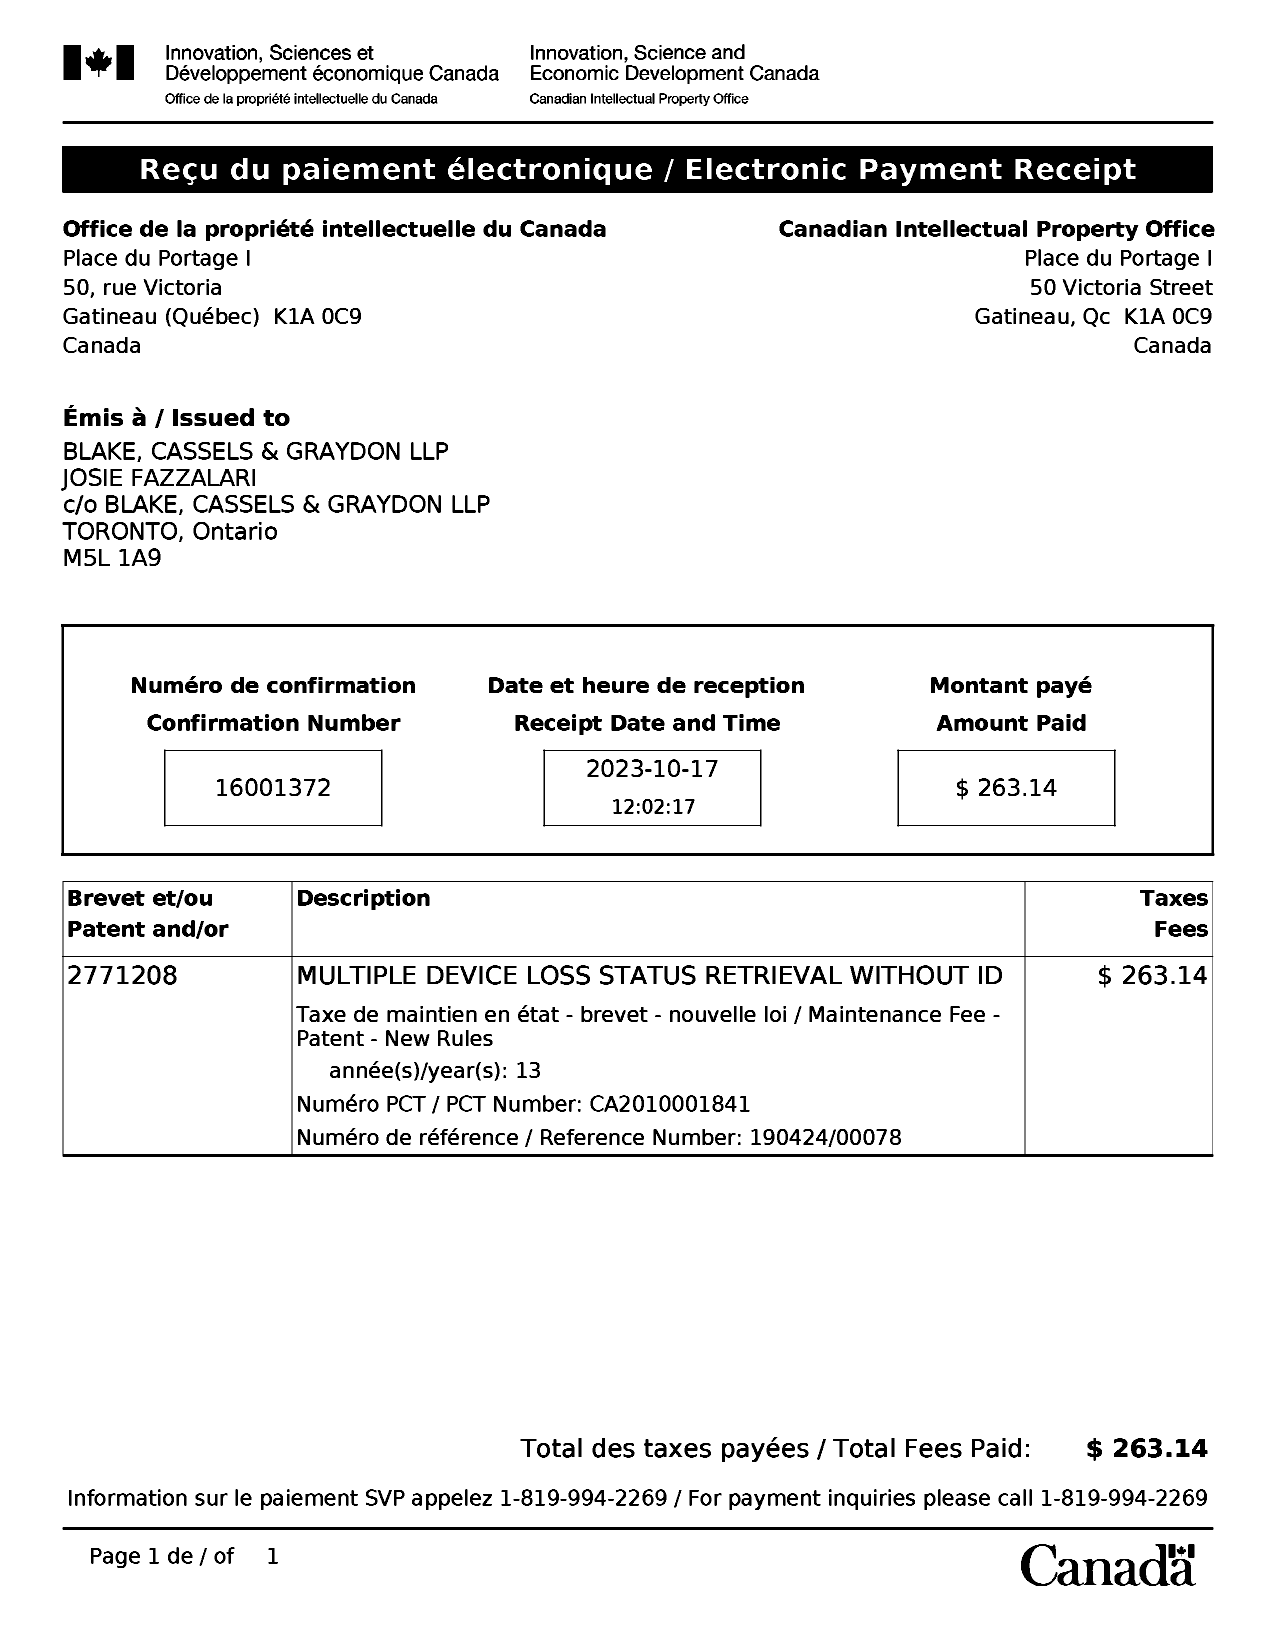 Document de brevet canadien 2771208. Paiement de taxe périodique 20231017. Image 1 de 1